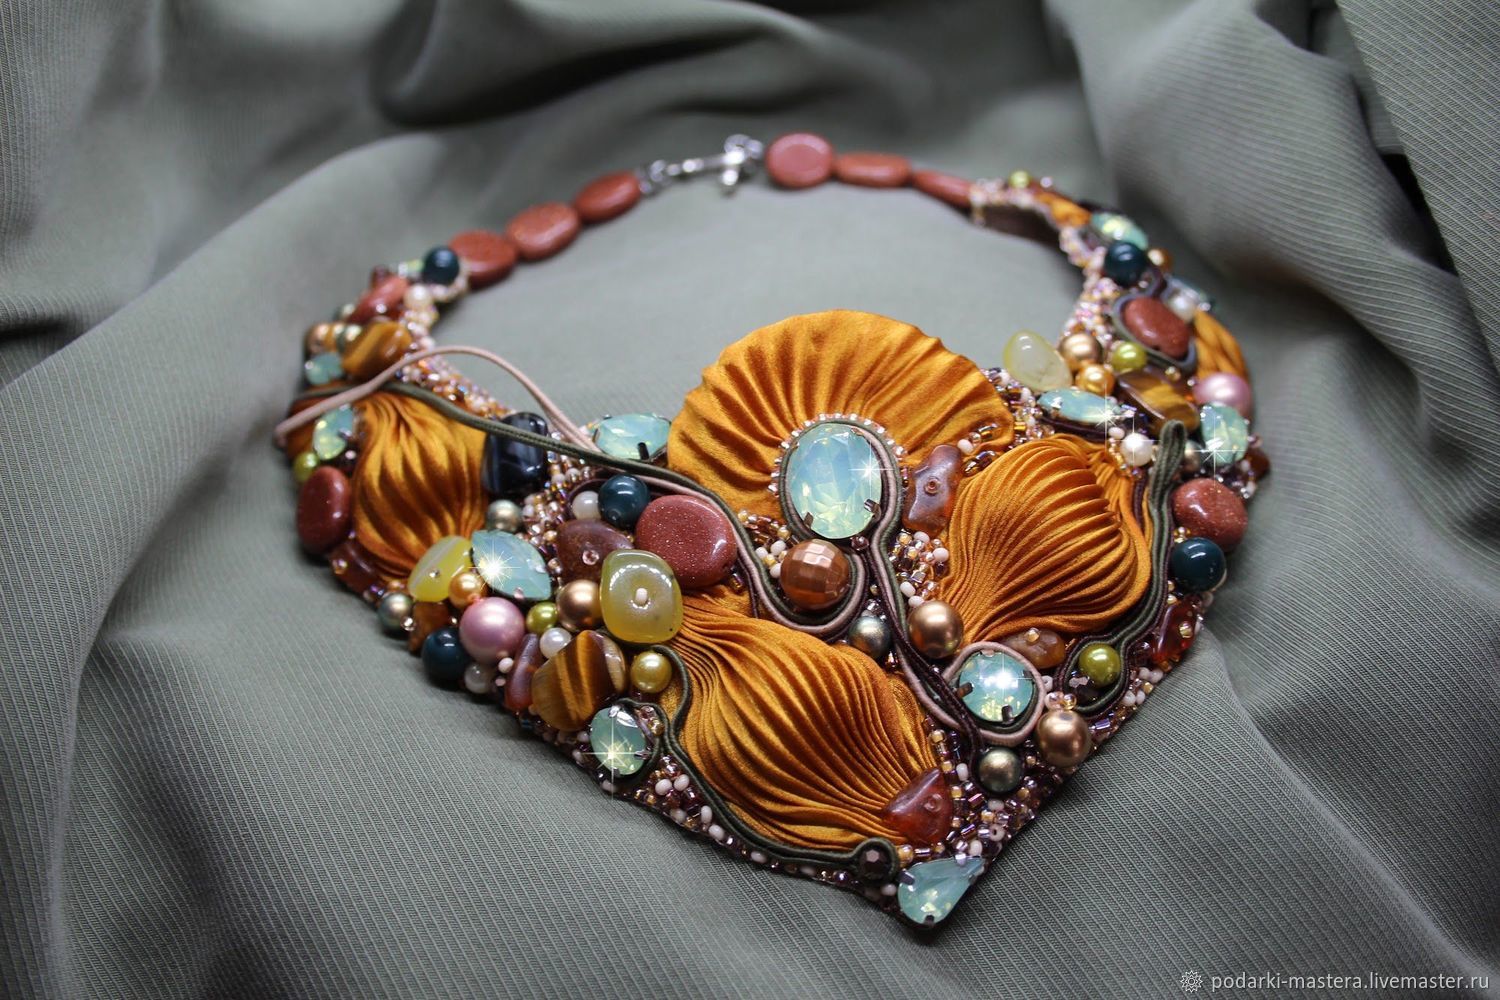 Стили ювелирных украшений — минимализм, модерн, ар-деко, этно, барокко, ретро и многие другие